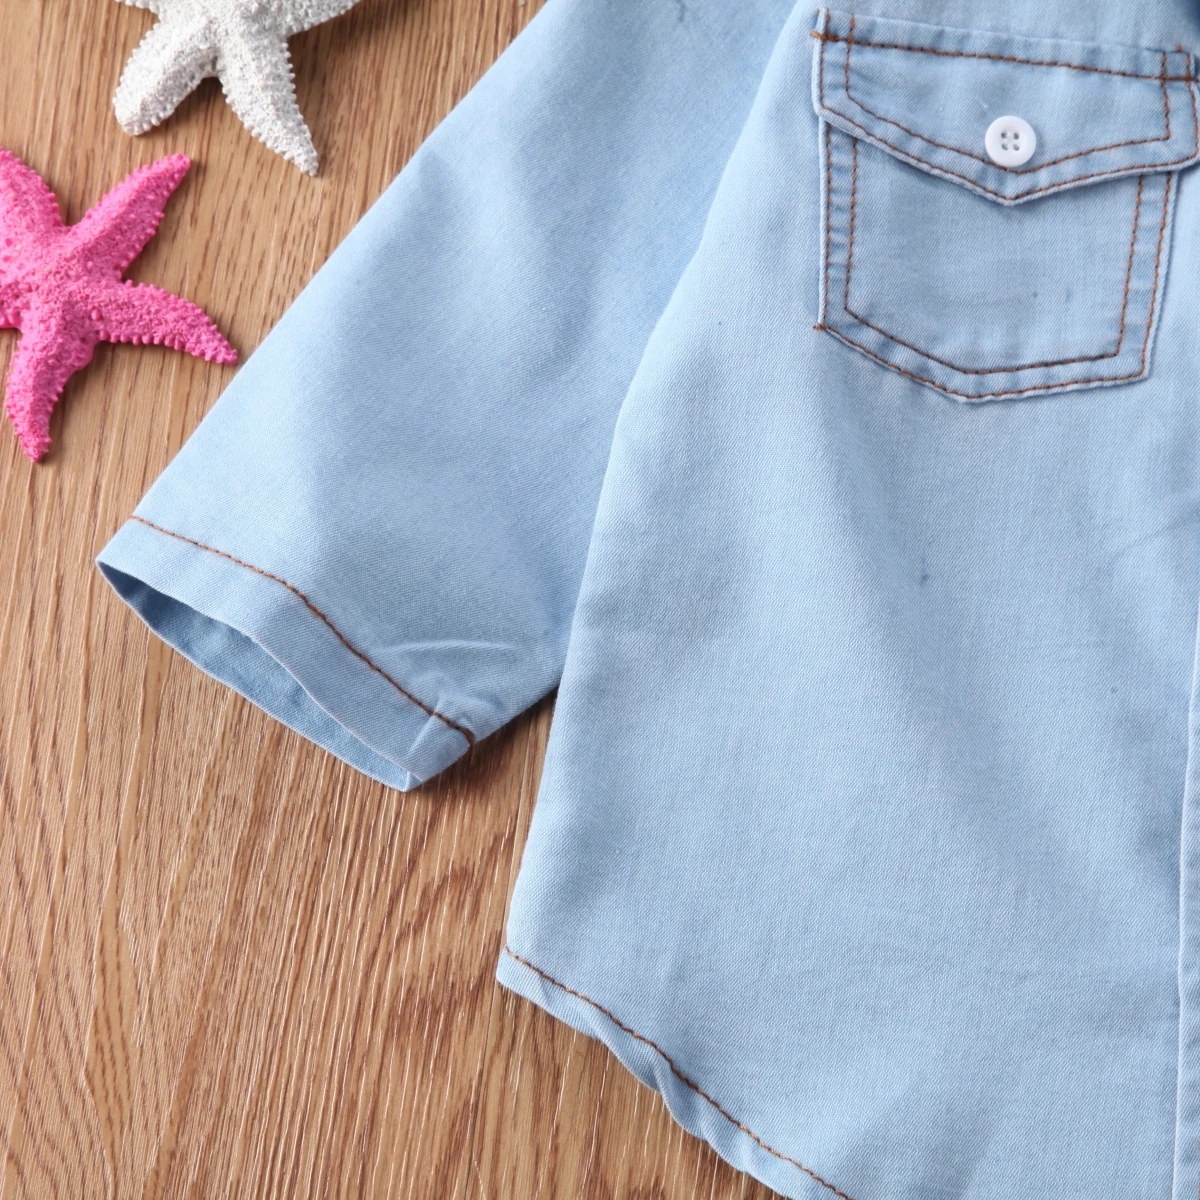 Одежда для маленьких мальчиков и девочек из джинсовой ткани с длинными рукавами и карманами и отложным воротником